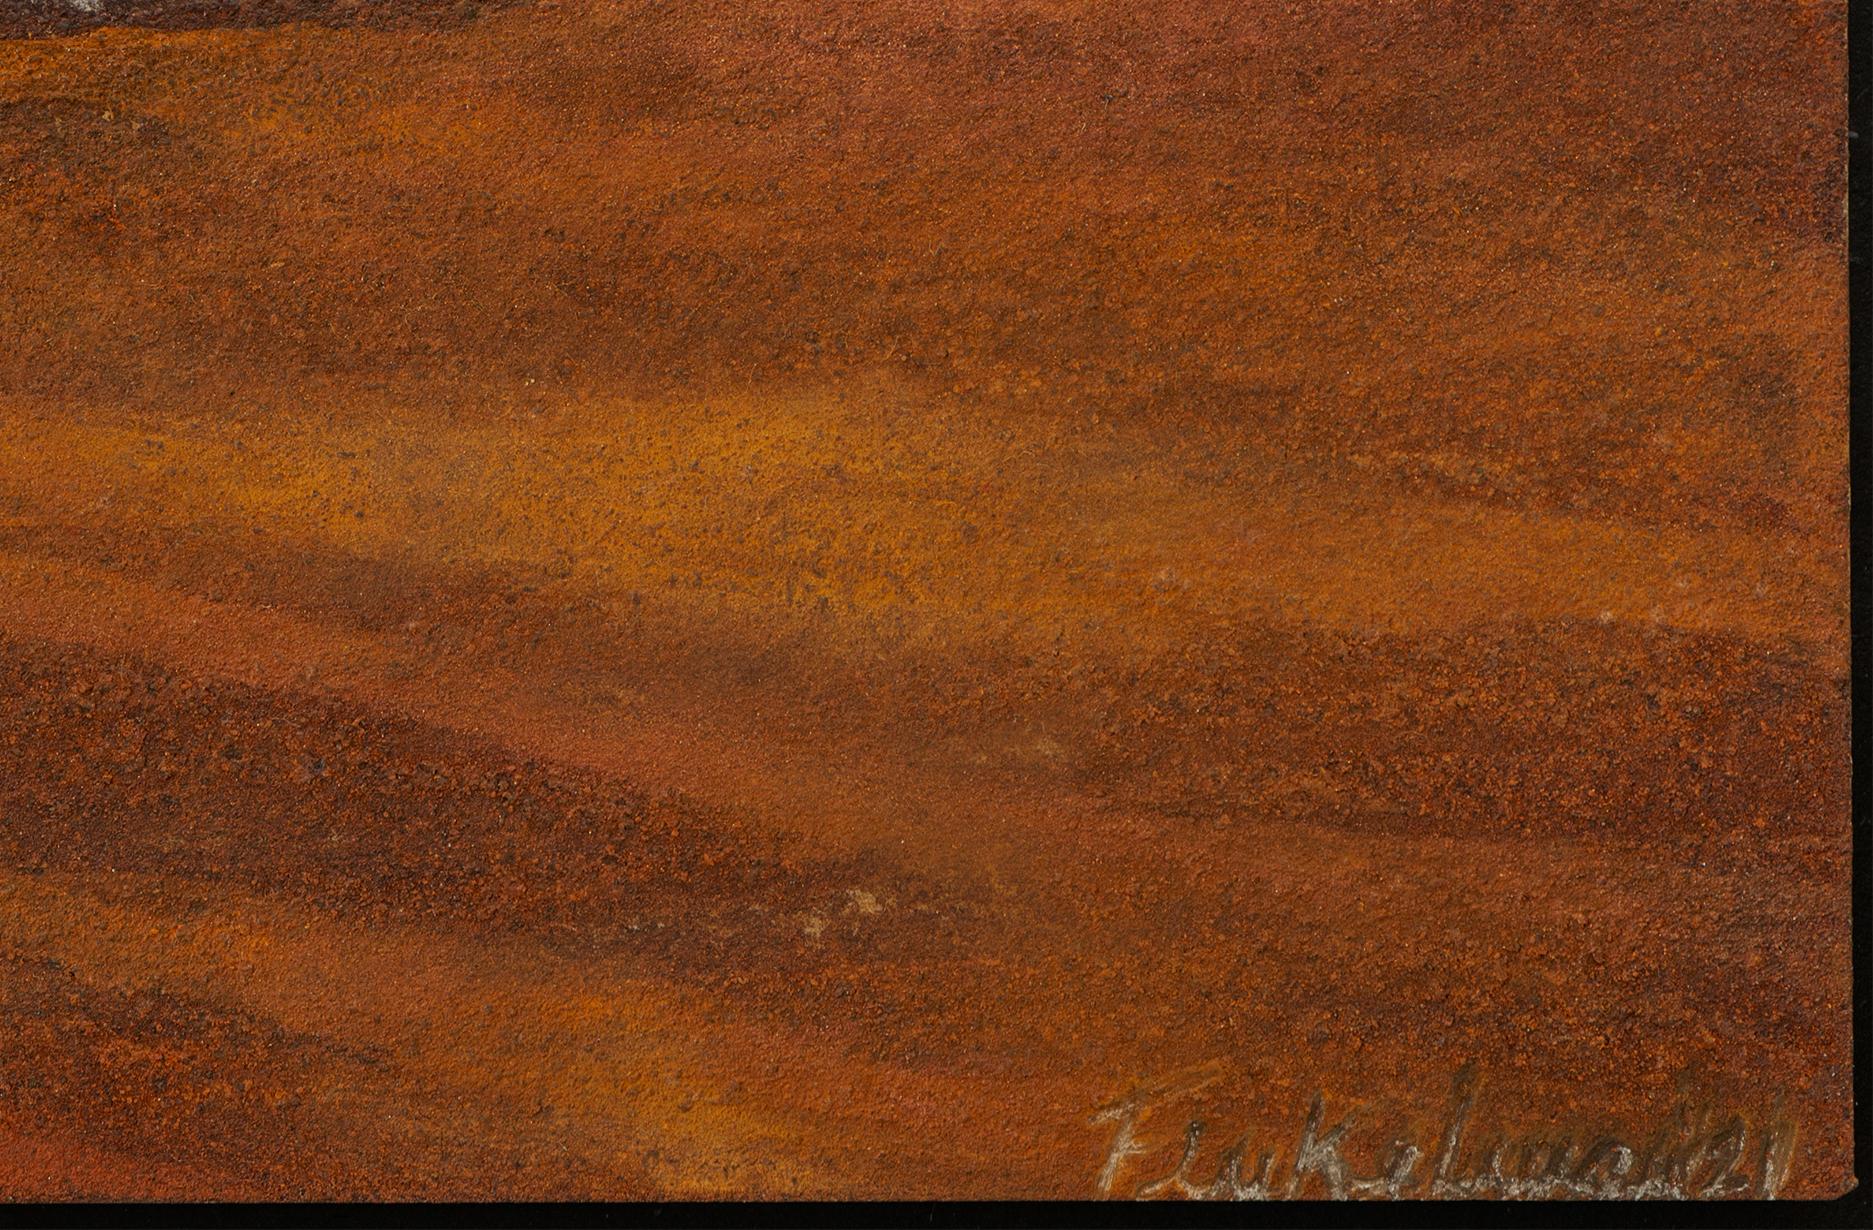 TATACOA, von Fanny Finkelman Szyller
Aus der Serie Gemälde
Poliertes Metall, Rost und Pigmente 
Abmessungen:  21 H x 33,5 B x 2 T cm.
Gewicht: 1 lb
2021

______
Die Skulpturen von Fanny Finkelman sind das Ergebnis einer kontinuierlichen Erkundung